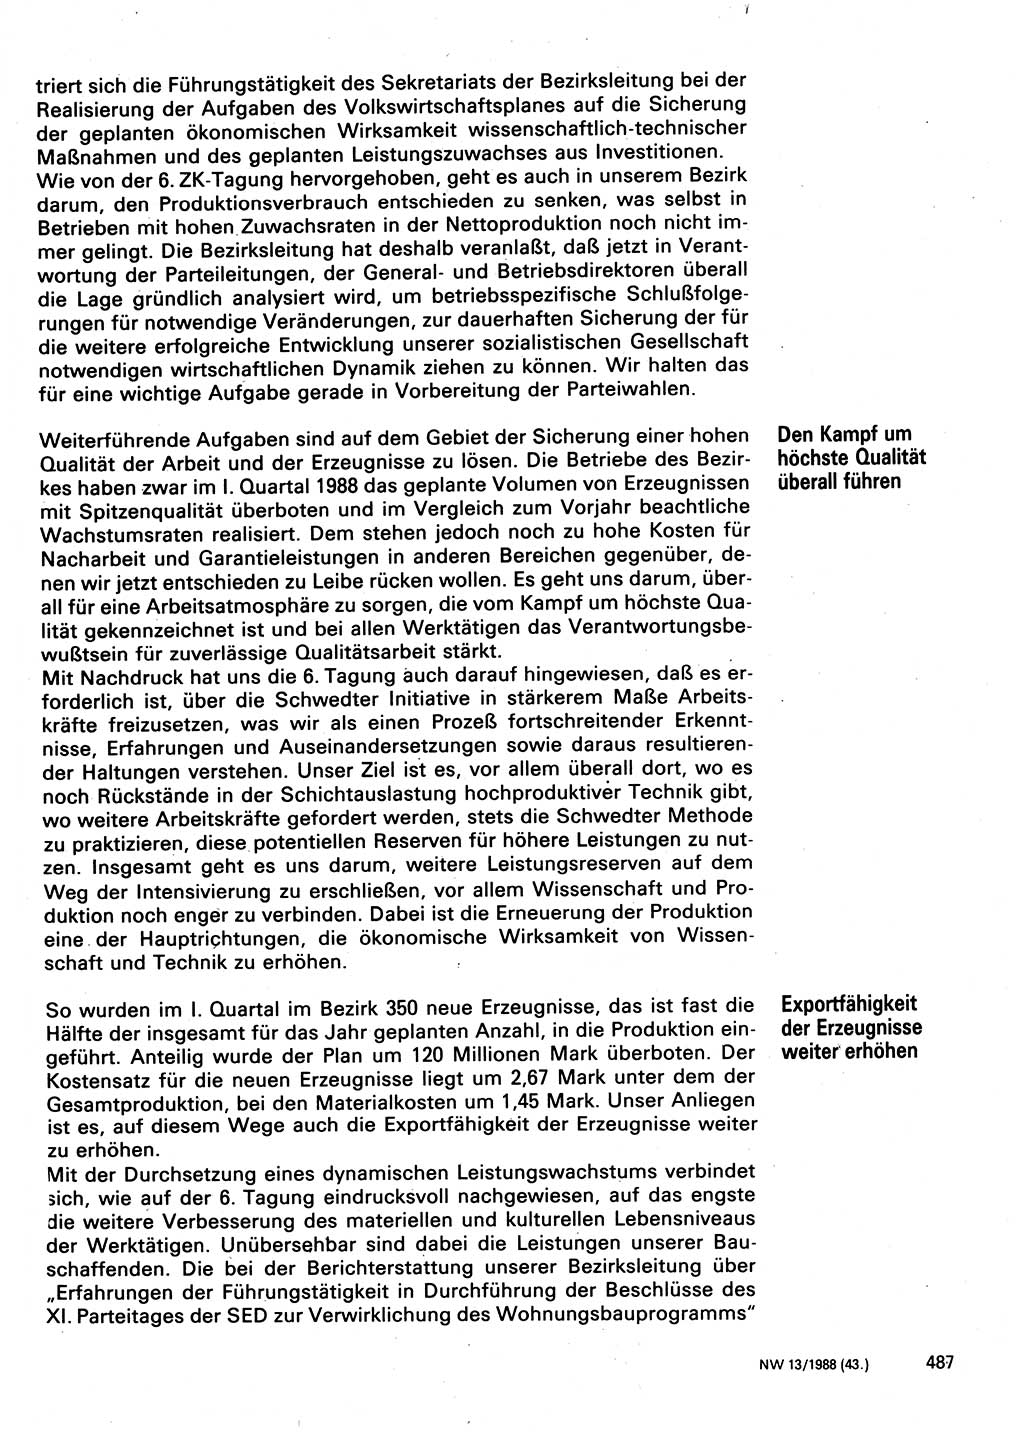 Neuer Weg (NW), Organ des Zentralkomitees (ZK) der SED (Sozialistische Einheitspartei Deutschlands) für Fragen des Parteilebens, 43. Jahrgang [Deutsche Demokratische Republik (DDR)] 1988, Seite 487 (NW ZK SED DDR 1988, S. 487)